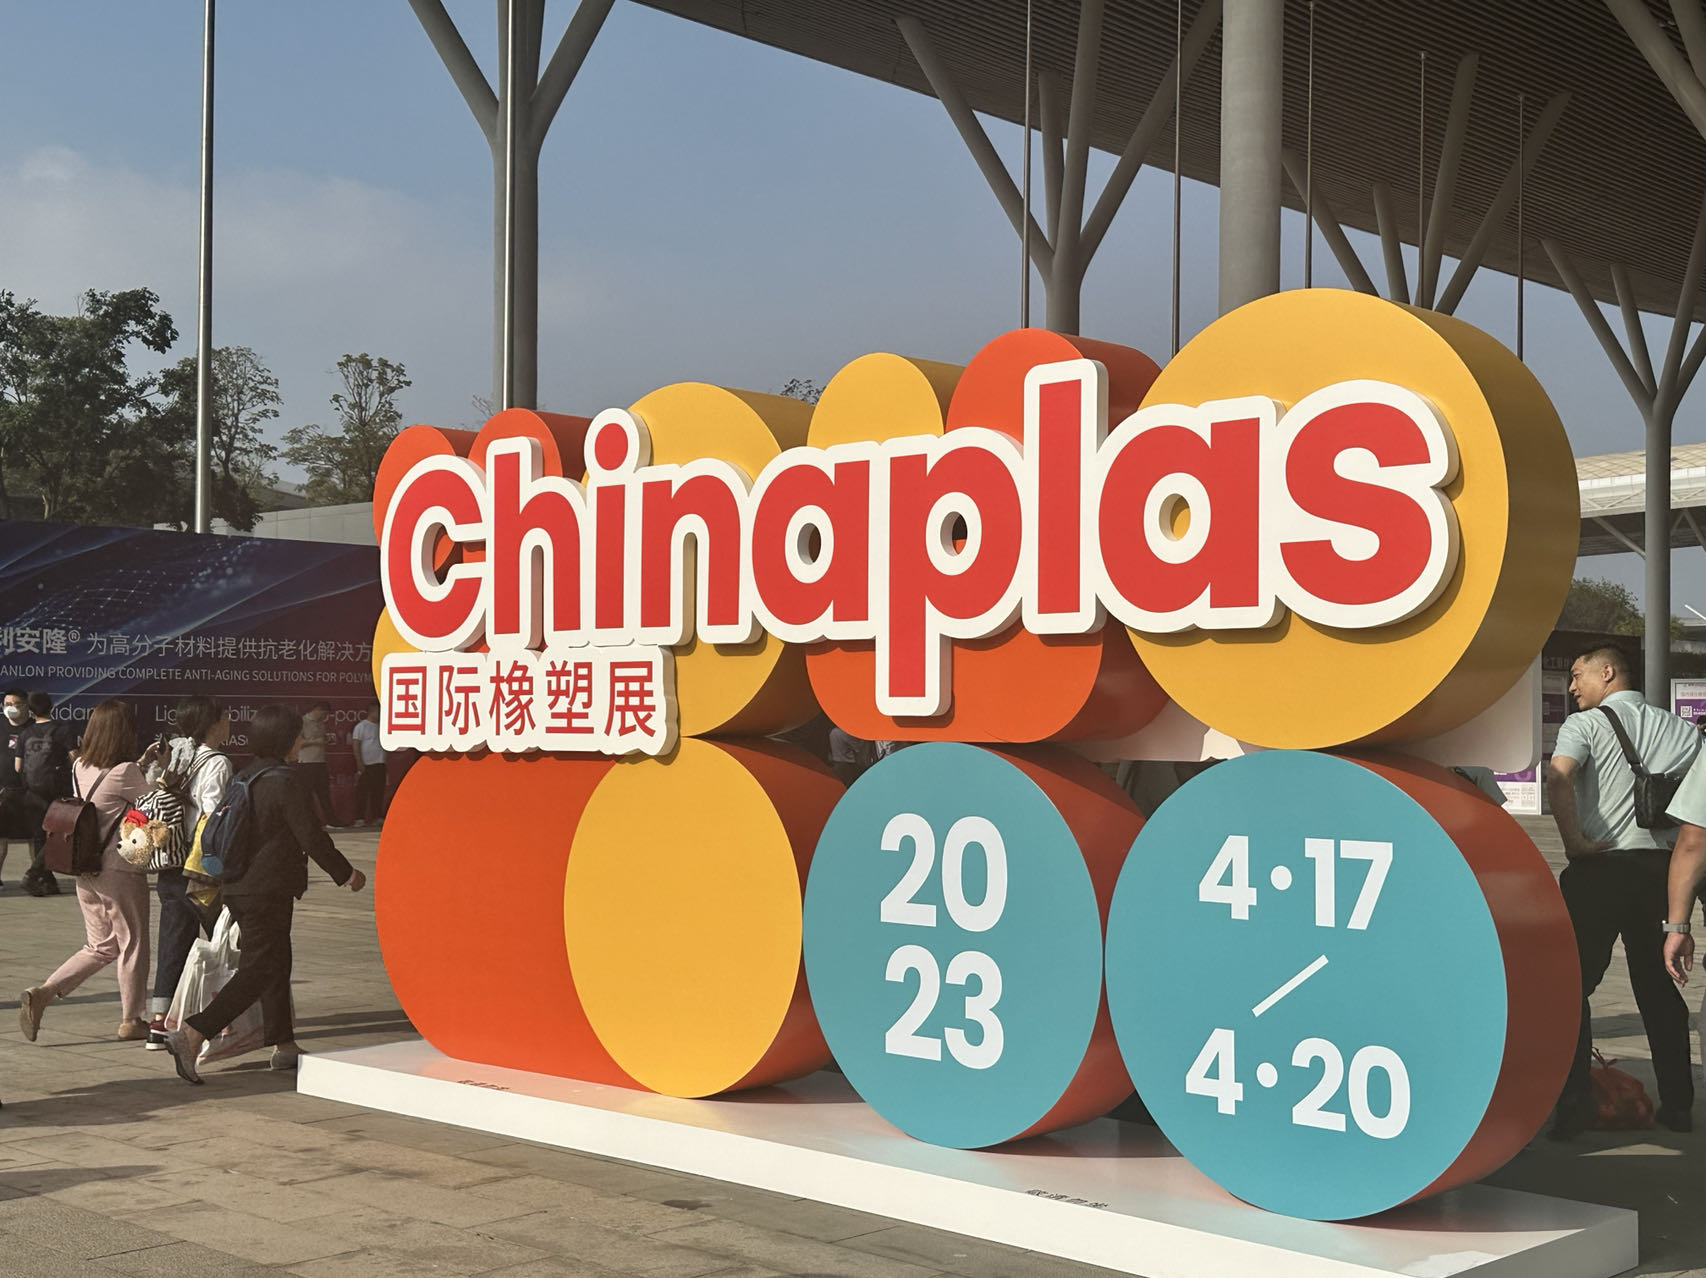 Chinaplas Exhibition in Shenzhen World Exhibition & Convention Center